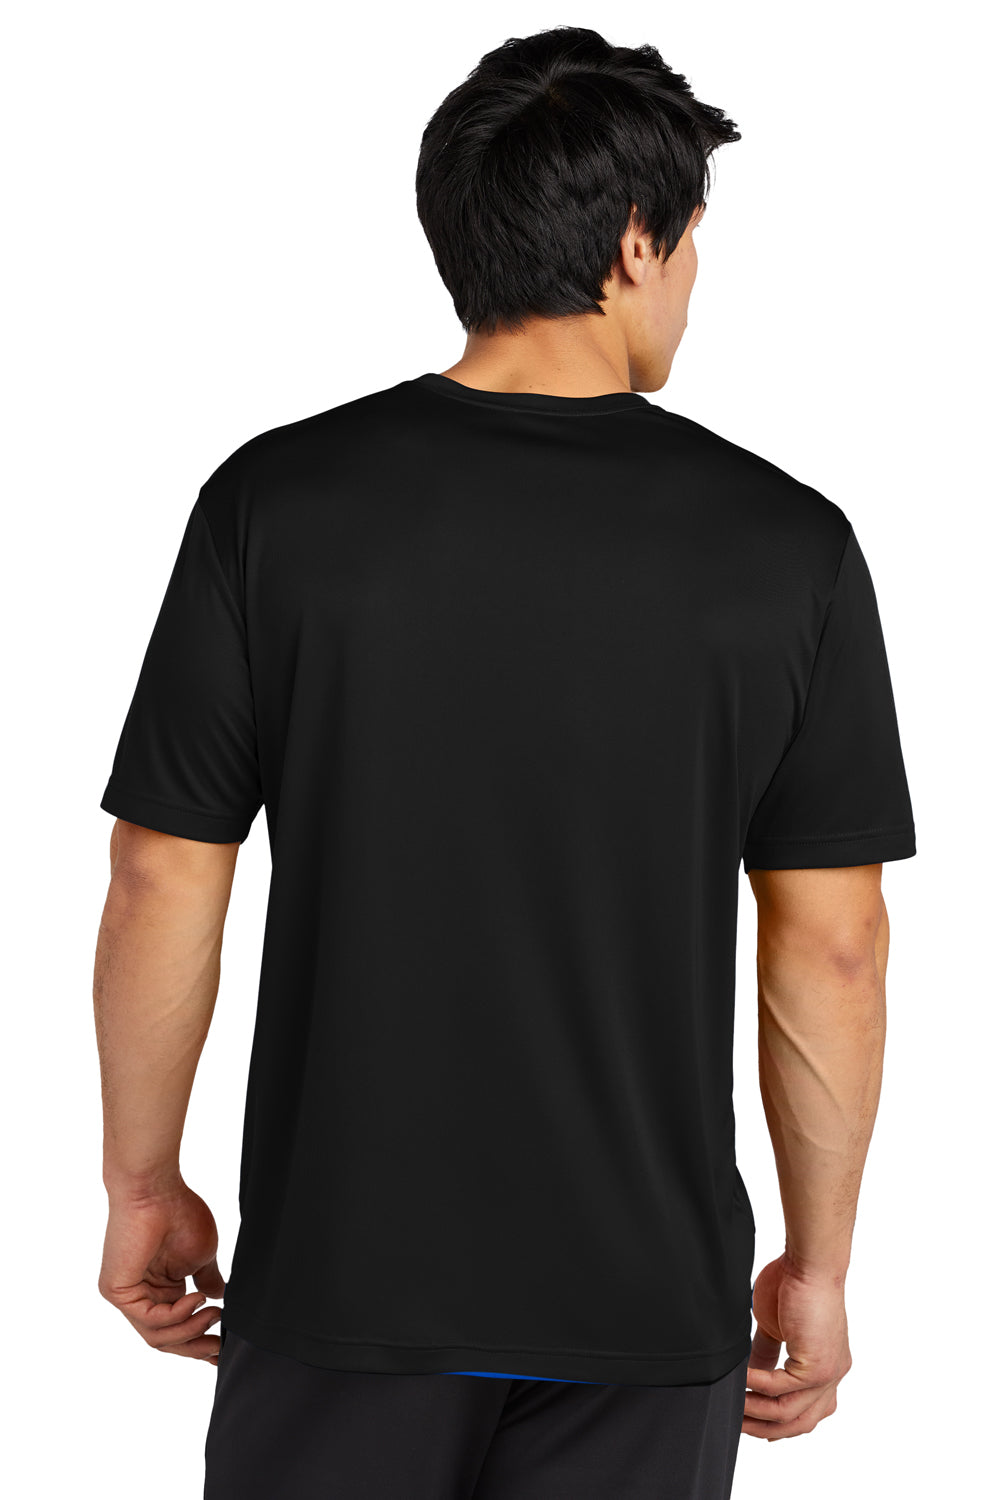 Sport-Tek ST720 Re-Compete PosiCharge Short Sleeve Crewneck T-Shirt Black Back